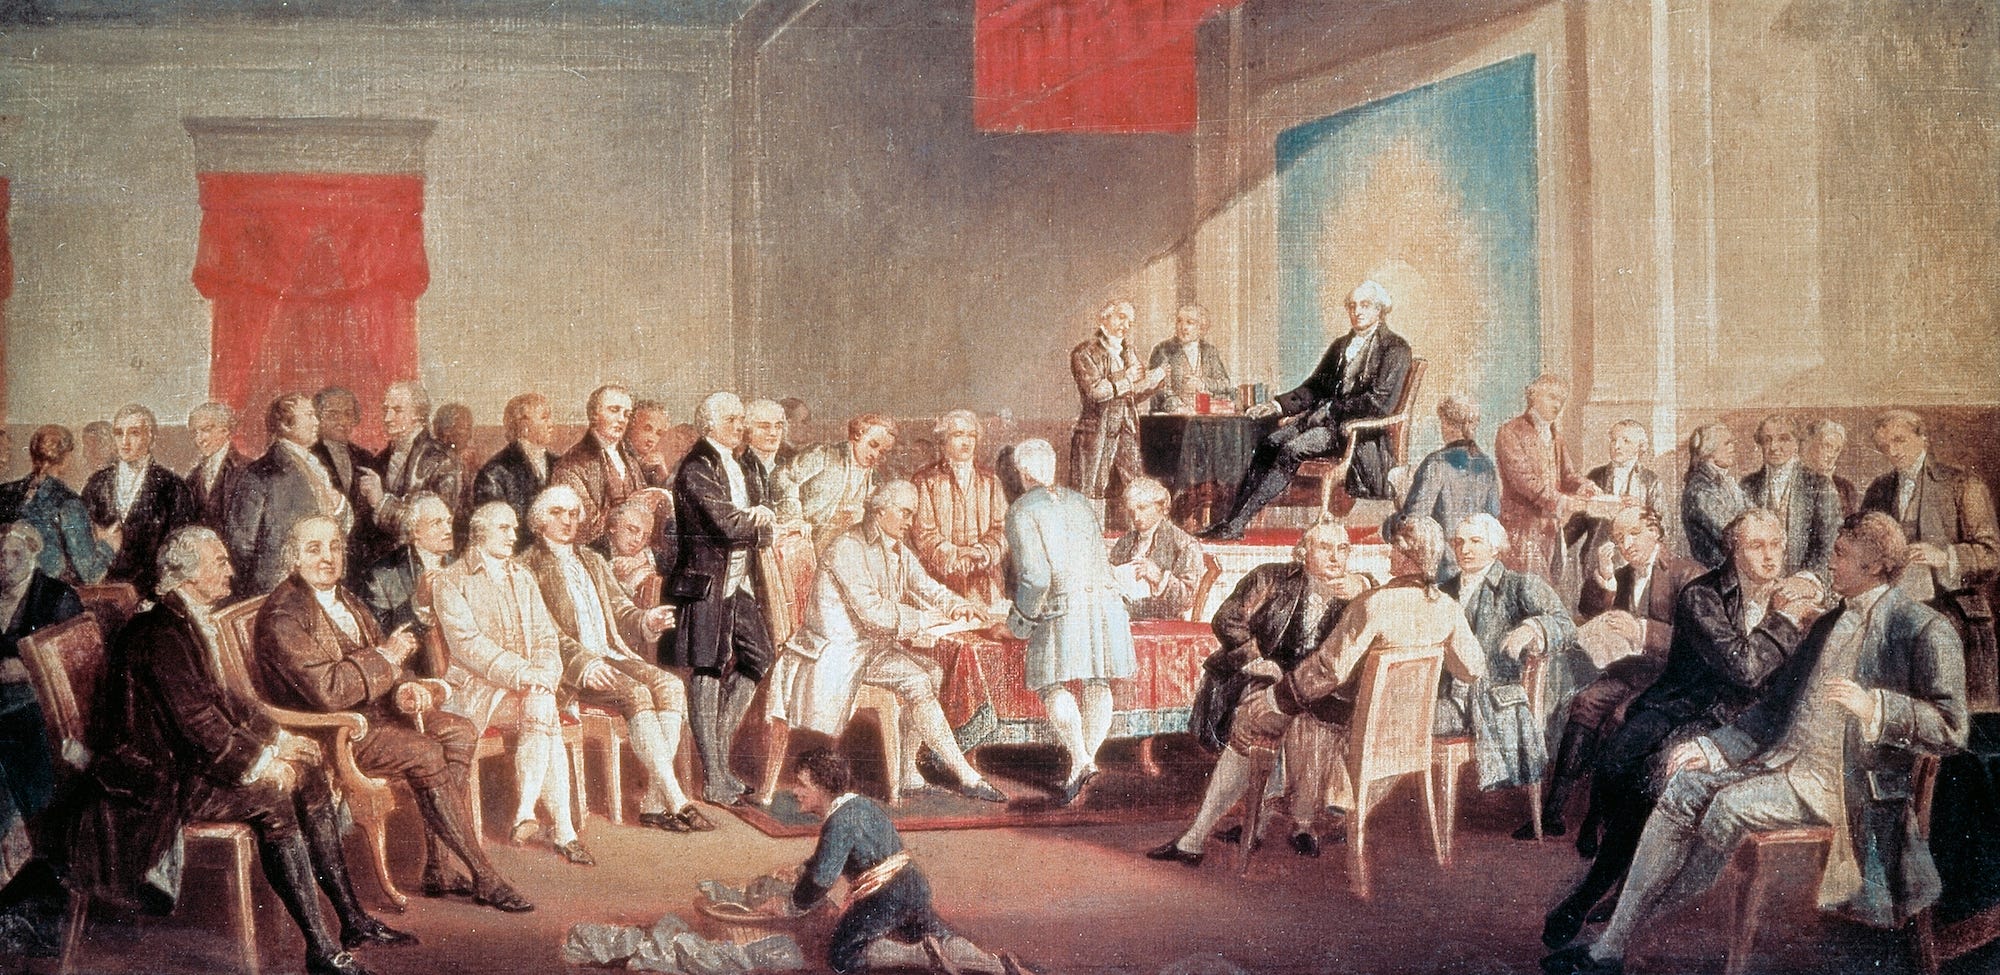 De eerste en enige constitutionele conventie die plaatsvond in de Amerikaanse geschiedenis is die van 1787 in Philadelphia.